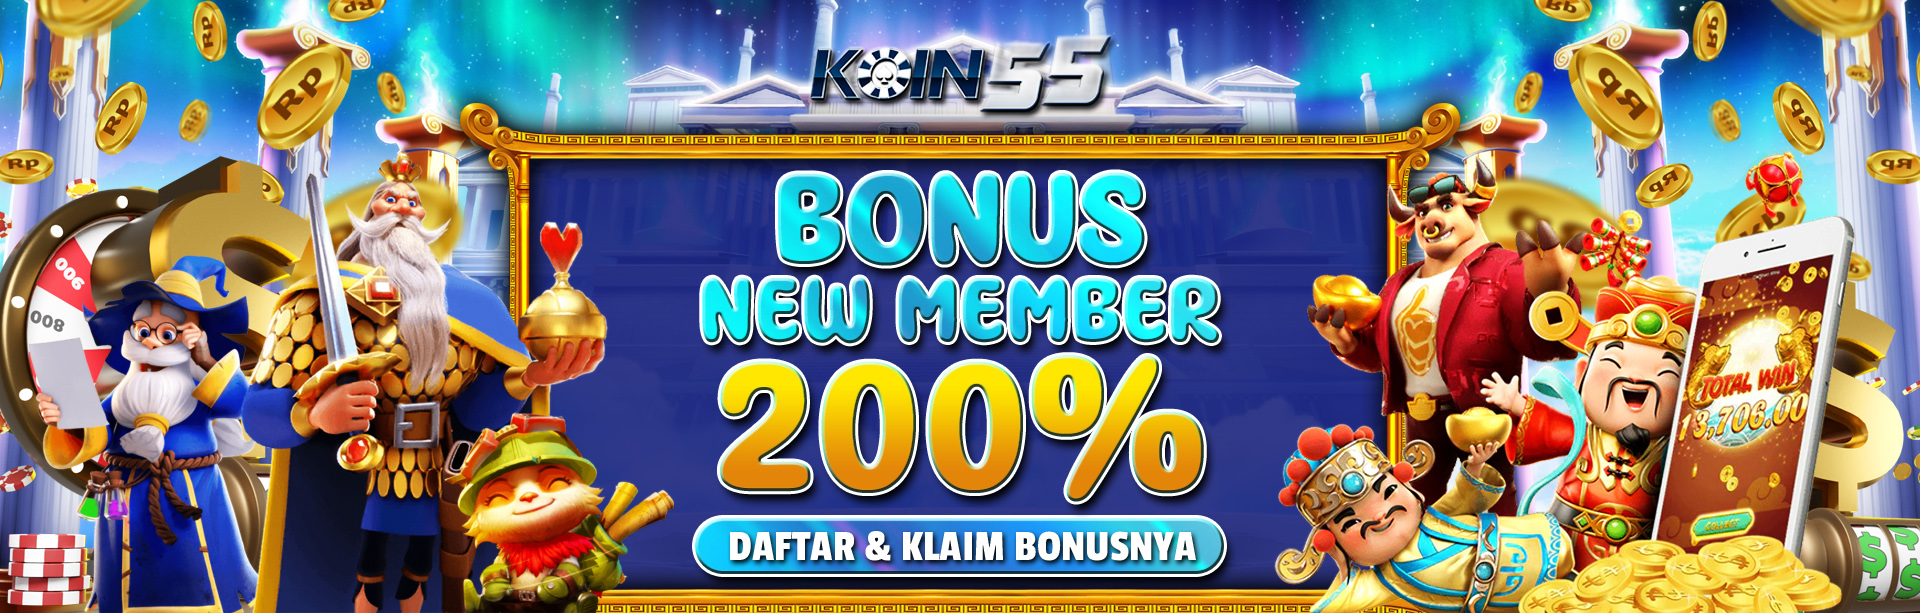 bonus new member 200 persen